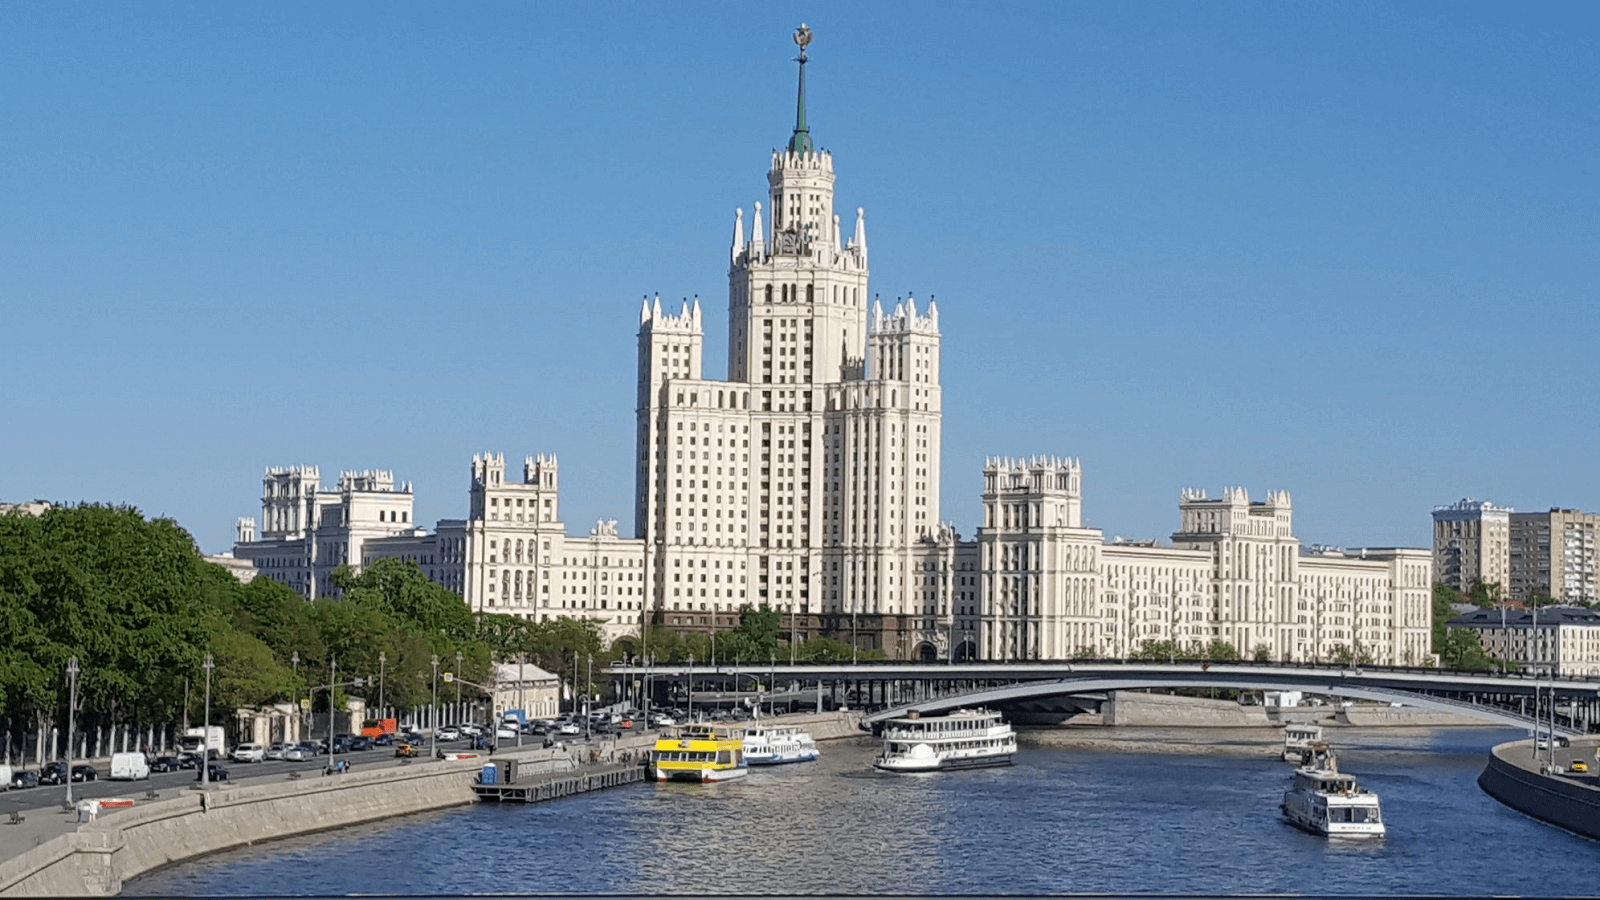 Interlegal General Meeting In Moscow